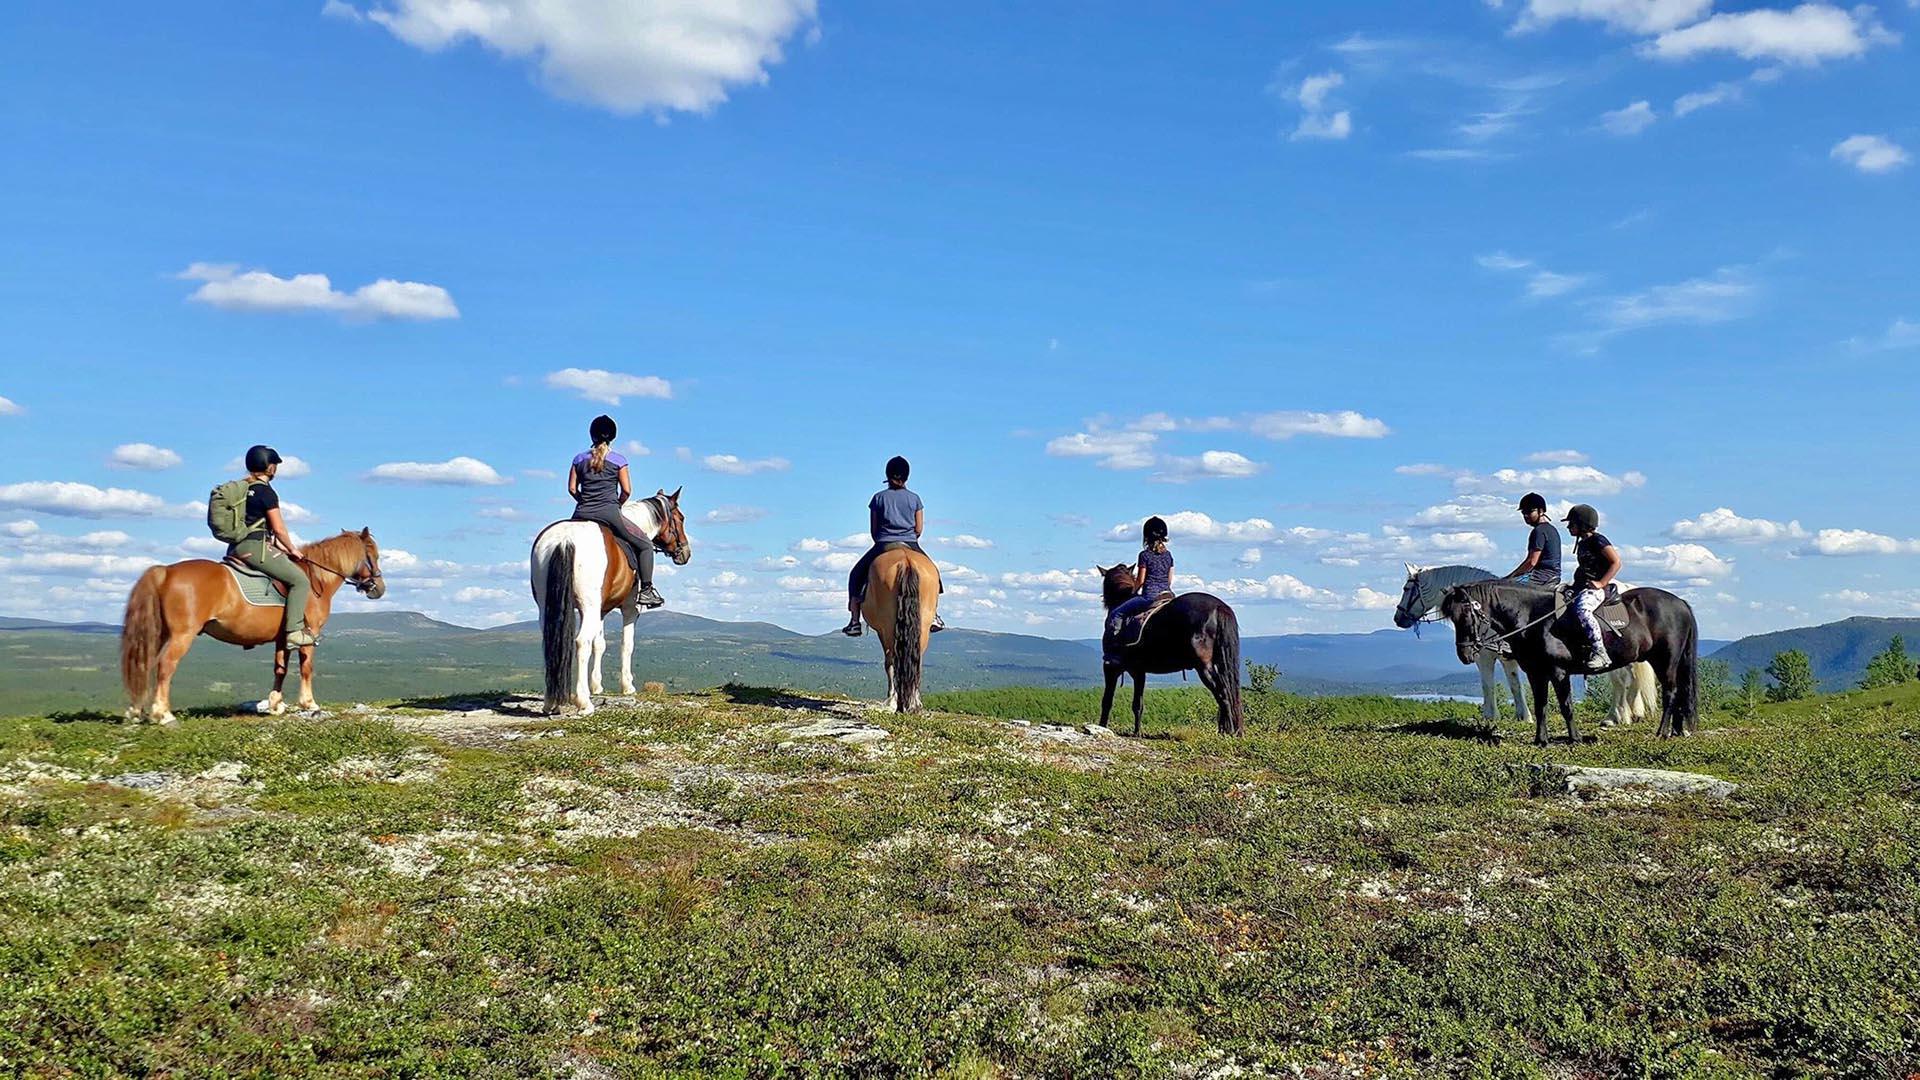 Seks ryttere på hesteryggen sett bakfra skuer utover fjellandskap